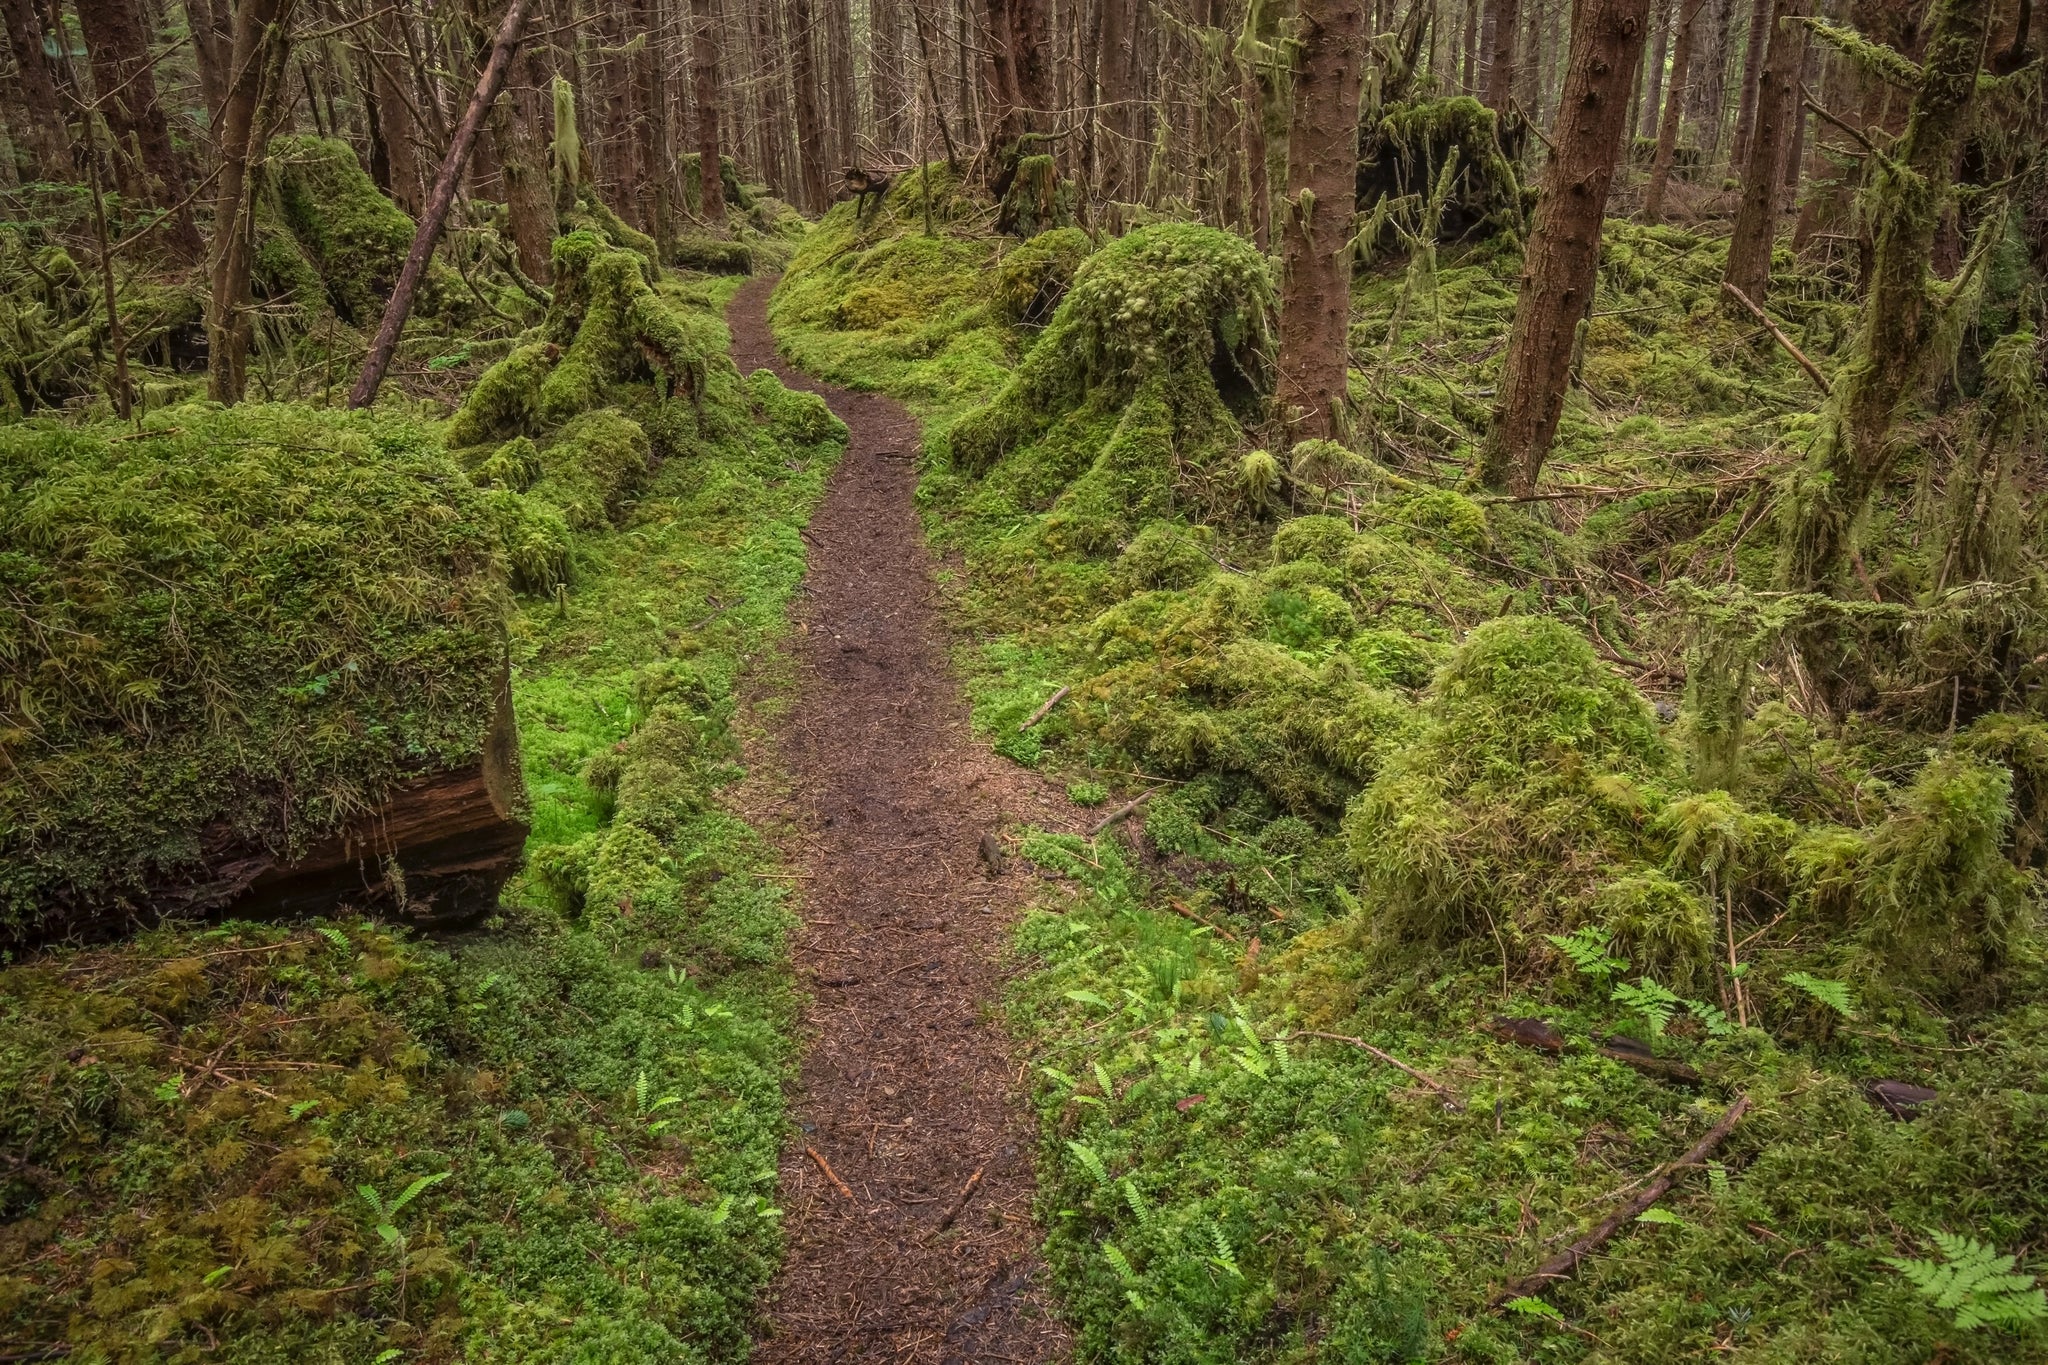 'Follow me' - Haida Gwaii/Queen Charlotte Islands, BC